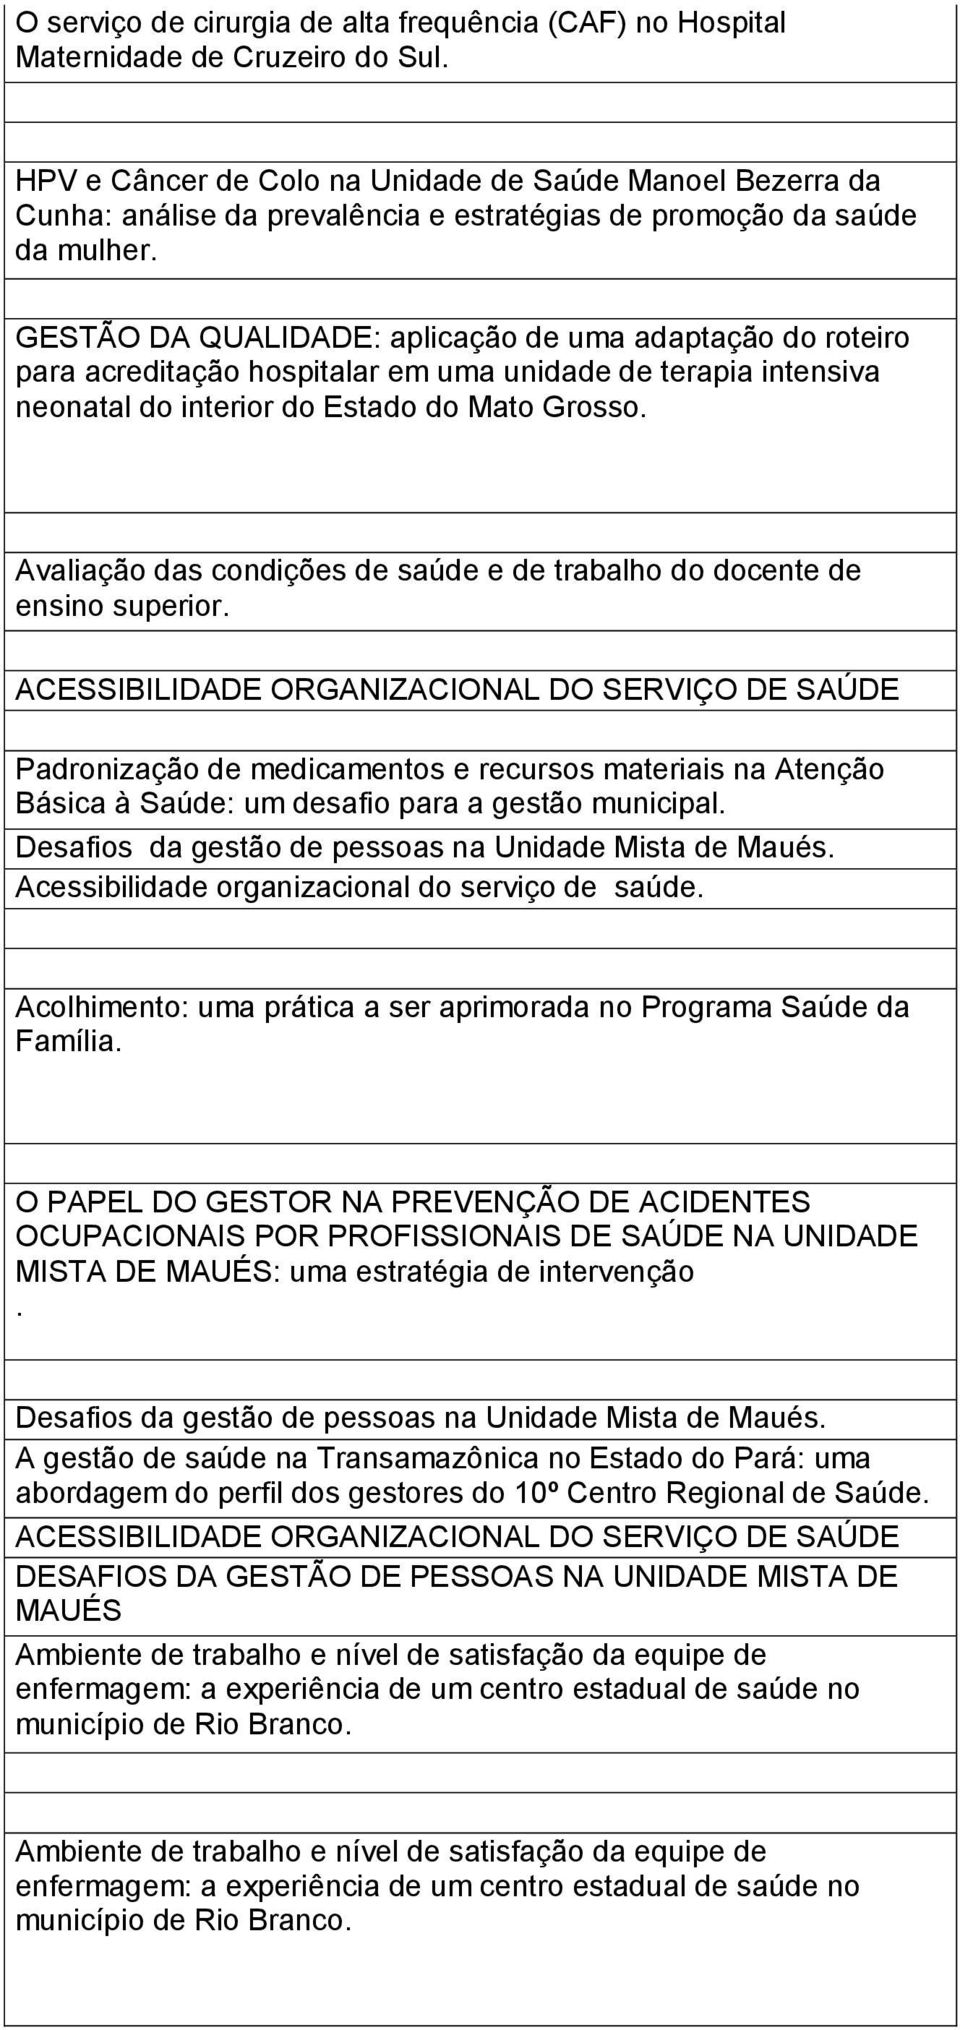 GESTÃO DA QUALIDADE: aplicação de uma adaptação do roteiro para acreditação hospitalar em uma unidade de terapia intensiva neonatal do interior do Estado do Mato Grosso.